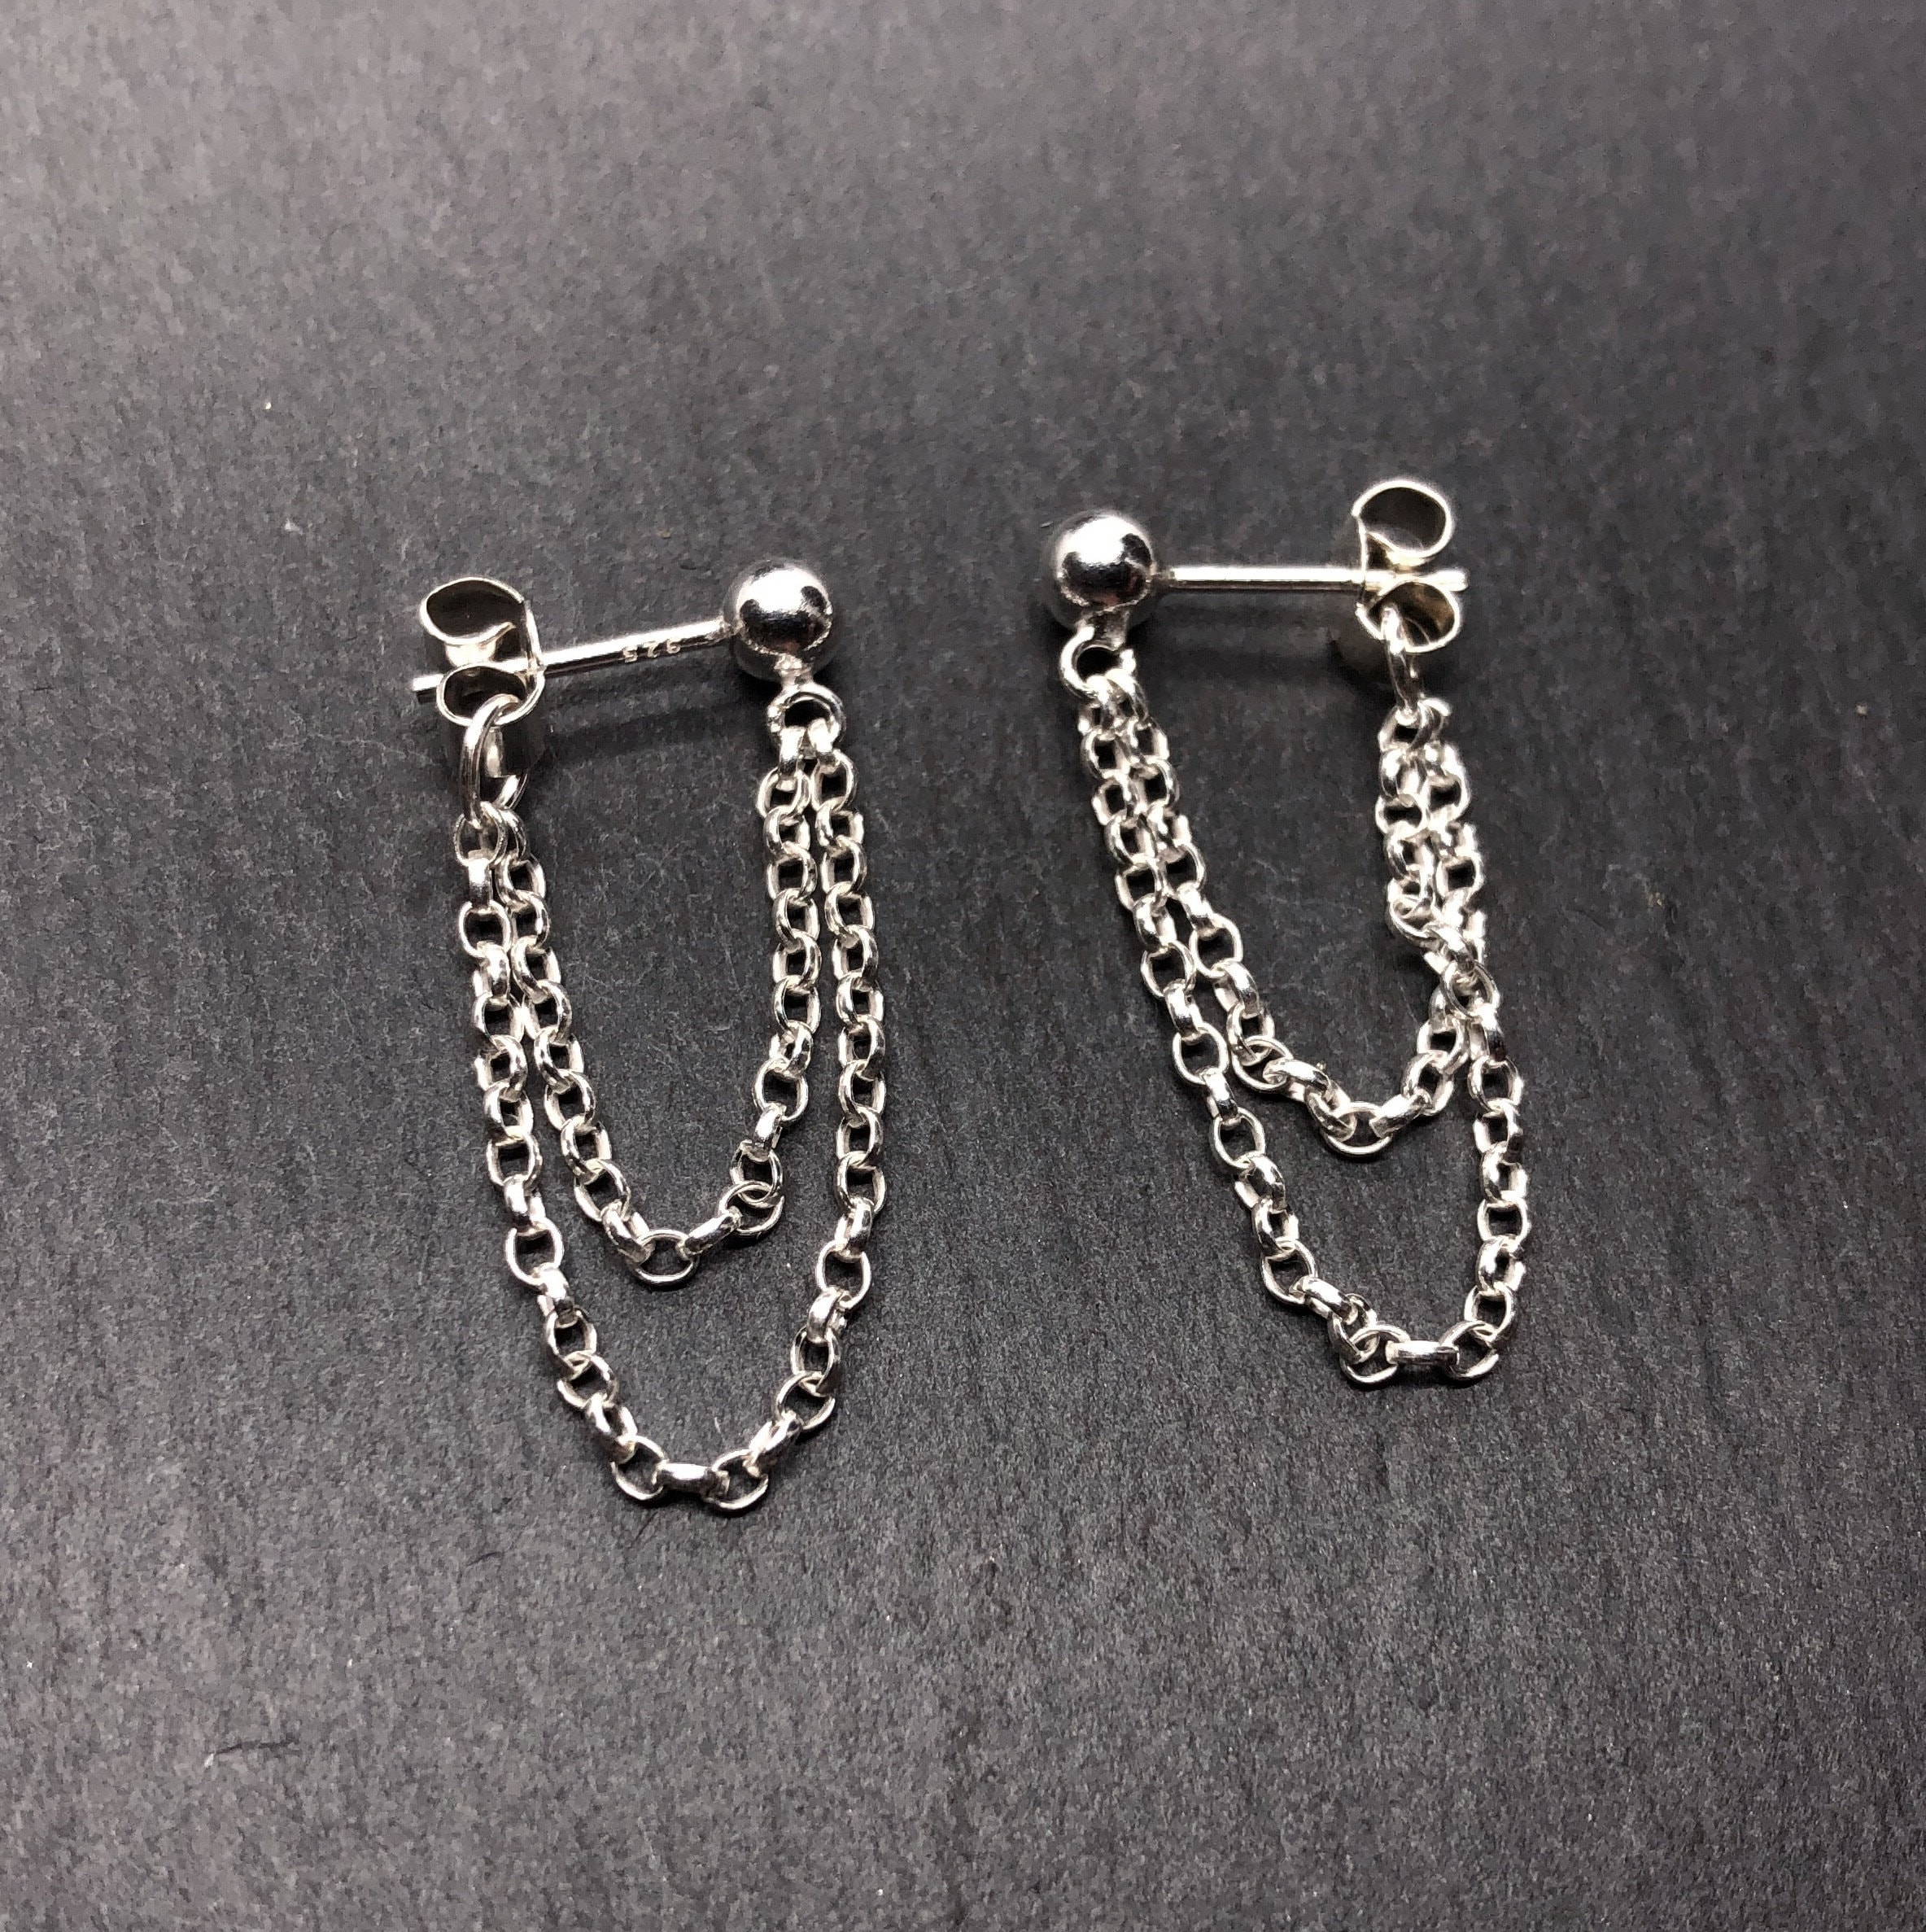 16g Flower cartilage chain earrings / double earrings / two hole earrings /  1pc | eBay